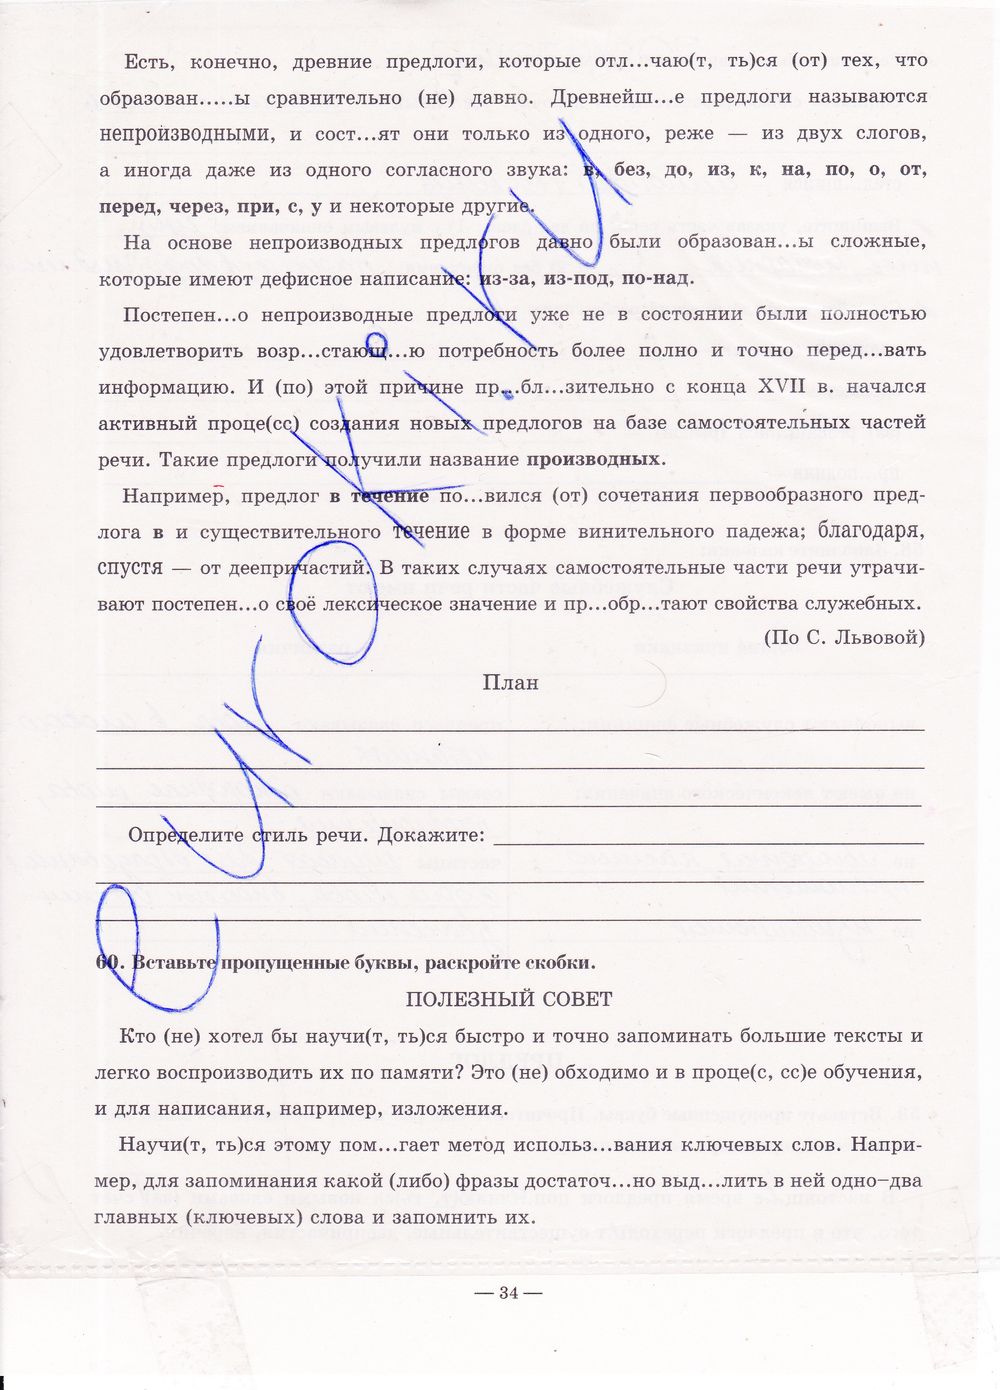 ГДЗ Русский язык 7 класс - стр. 34